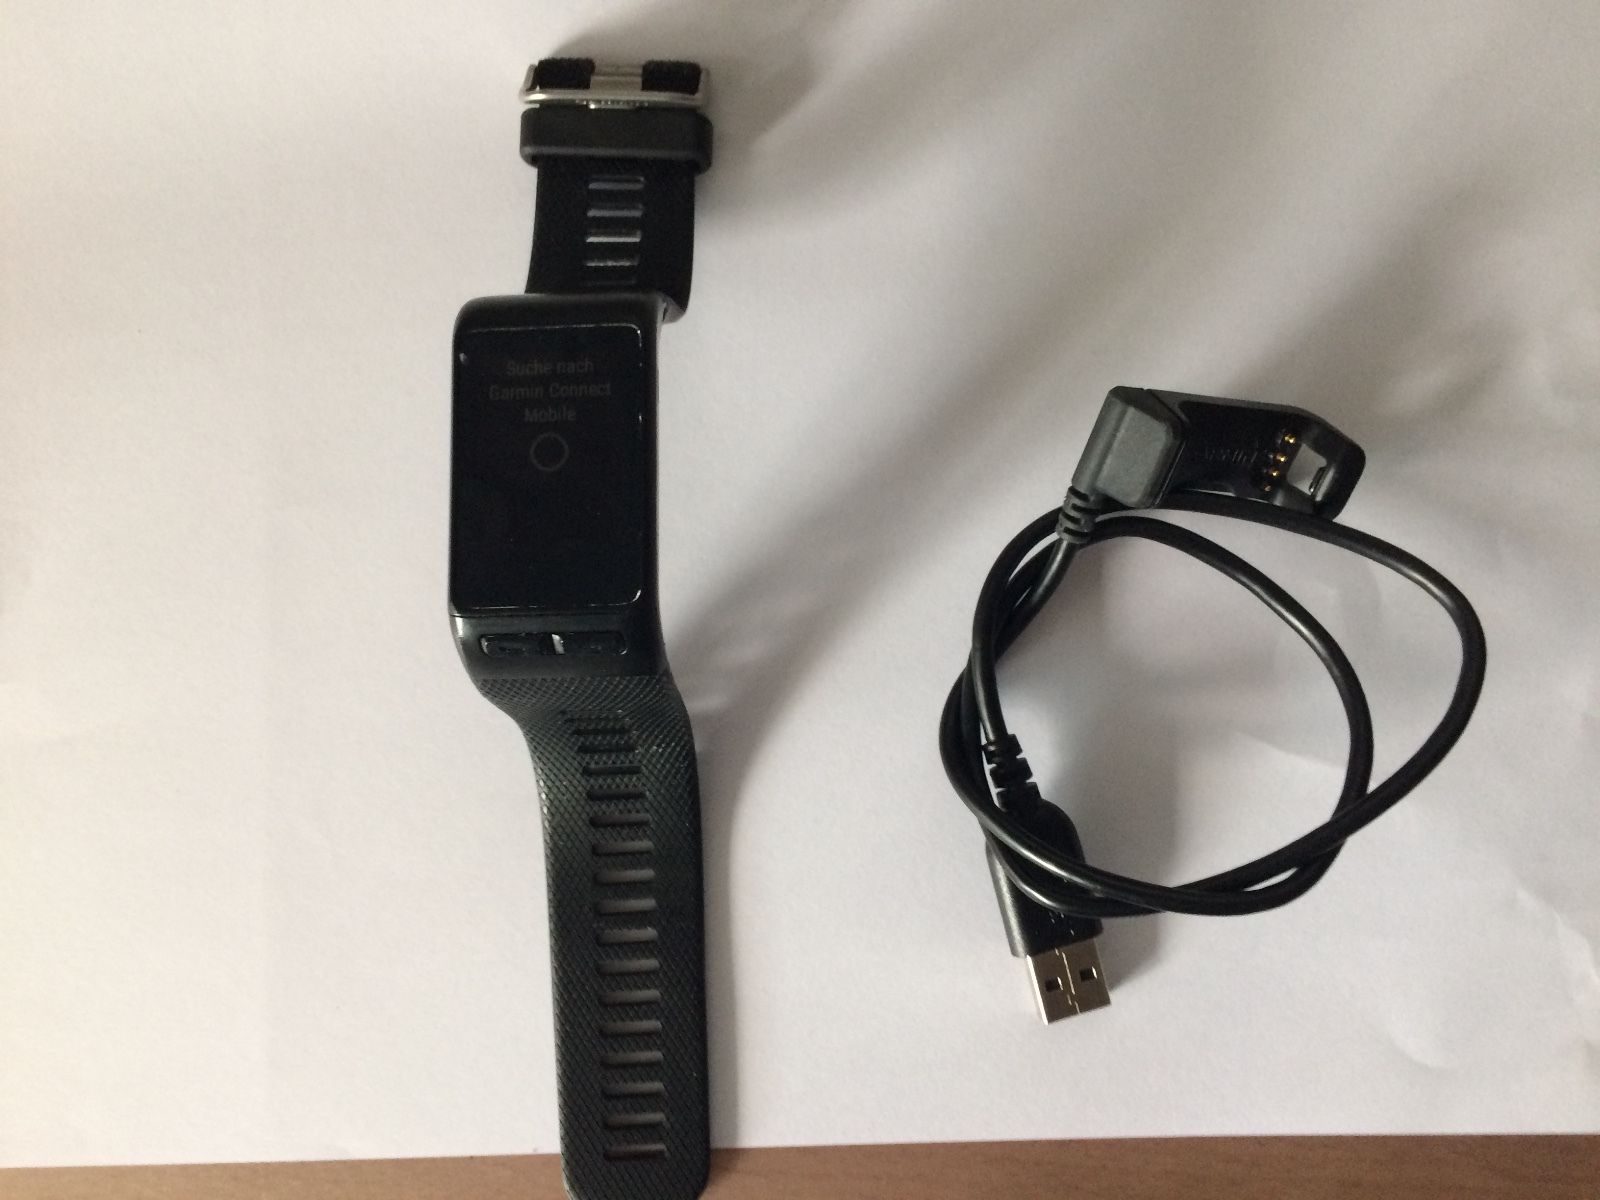 Garmin vivoactive HR, Sport-GPS Smartwatch mit Herzfrequenzmessung am Handgelenk